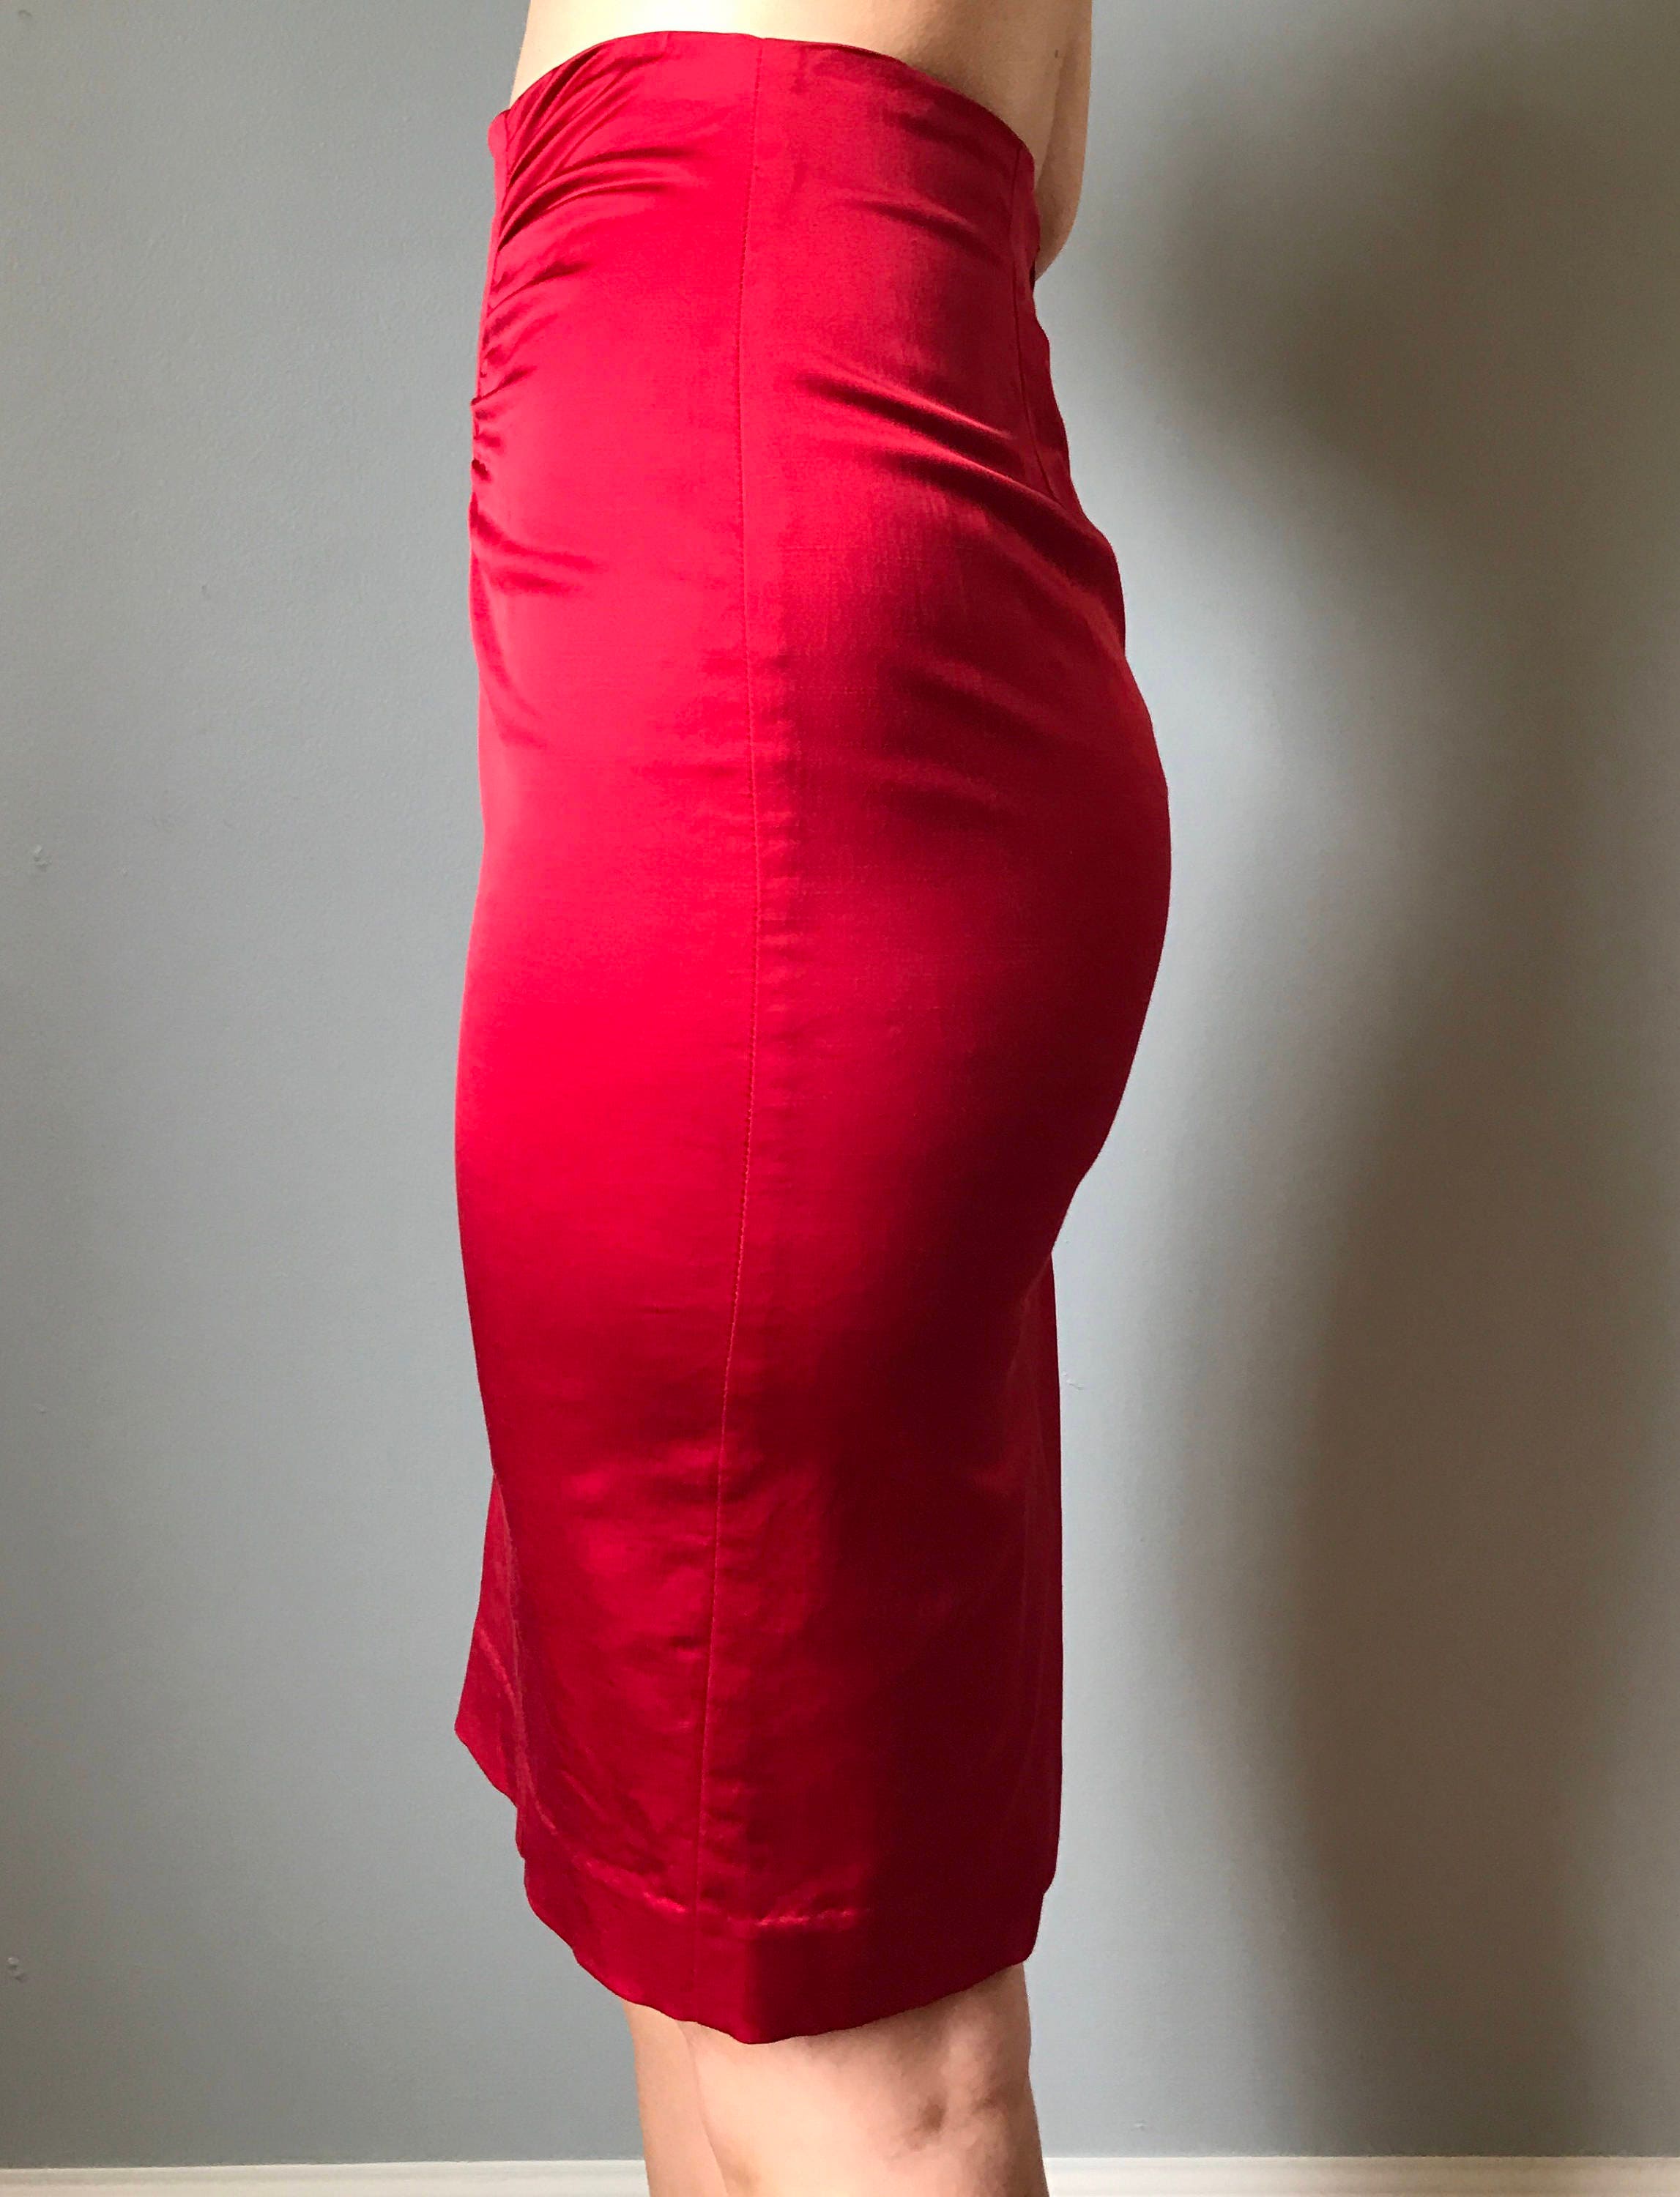 Siren Red Skirt - Etsy